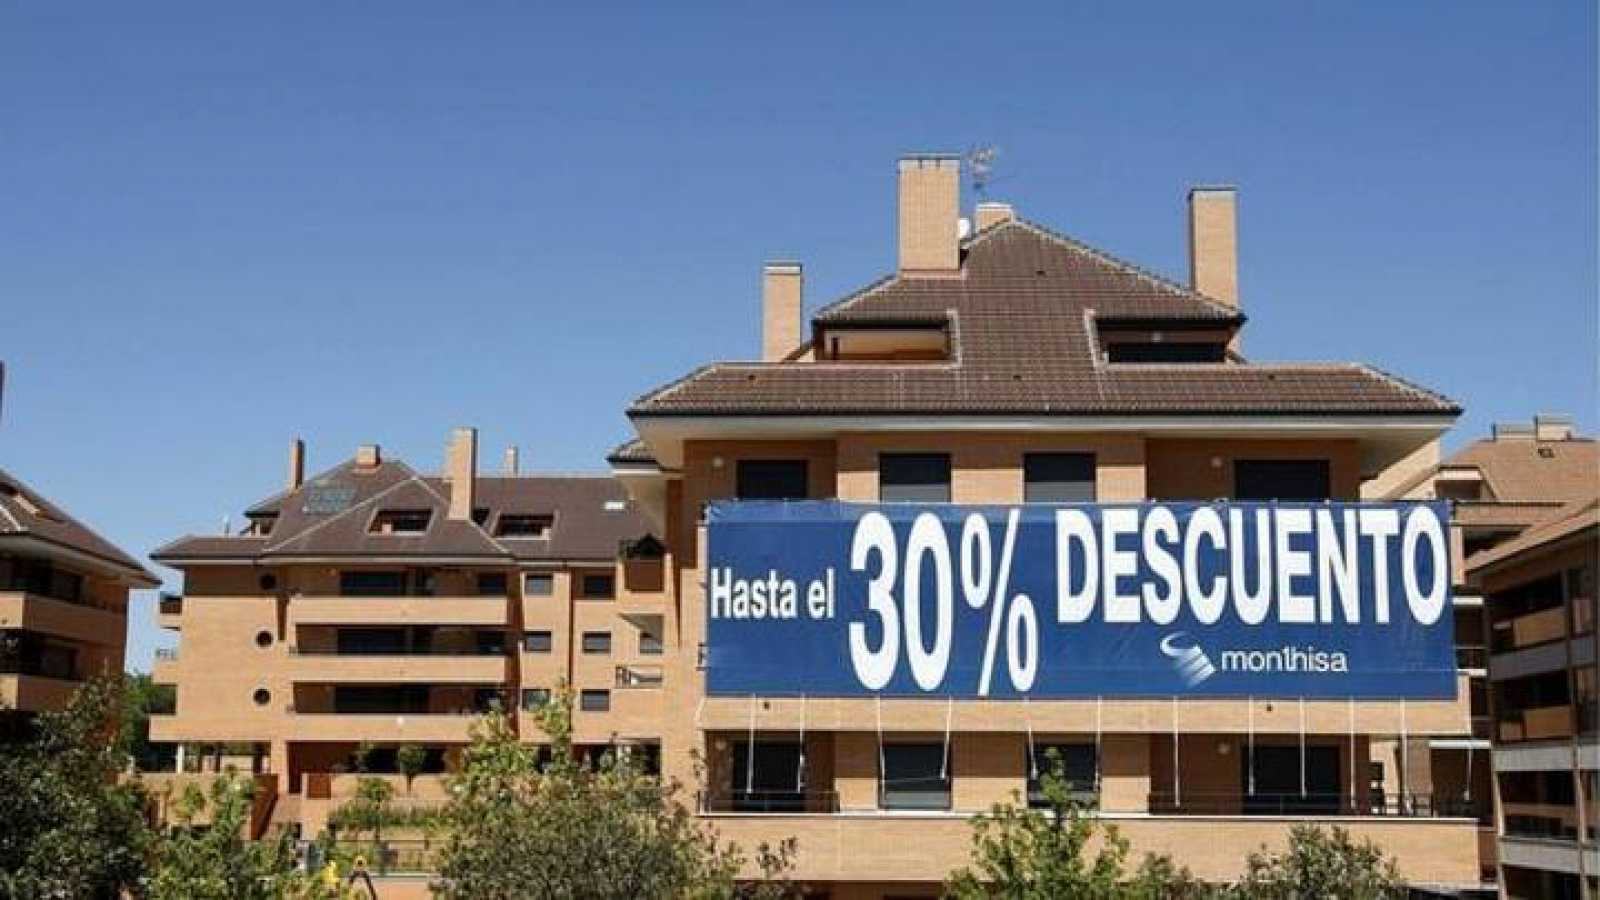 Самые большие скидки для покупателей жилья – в Таррагоне и Овьедо